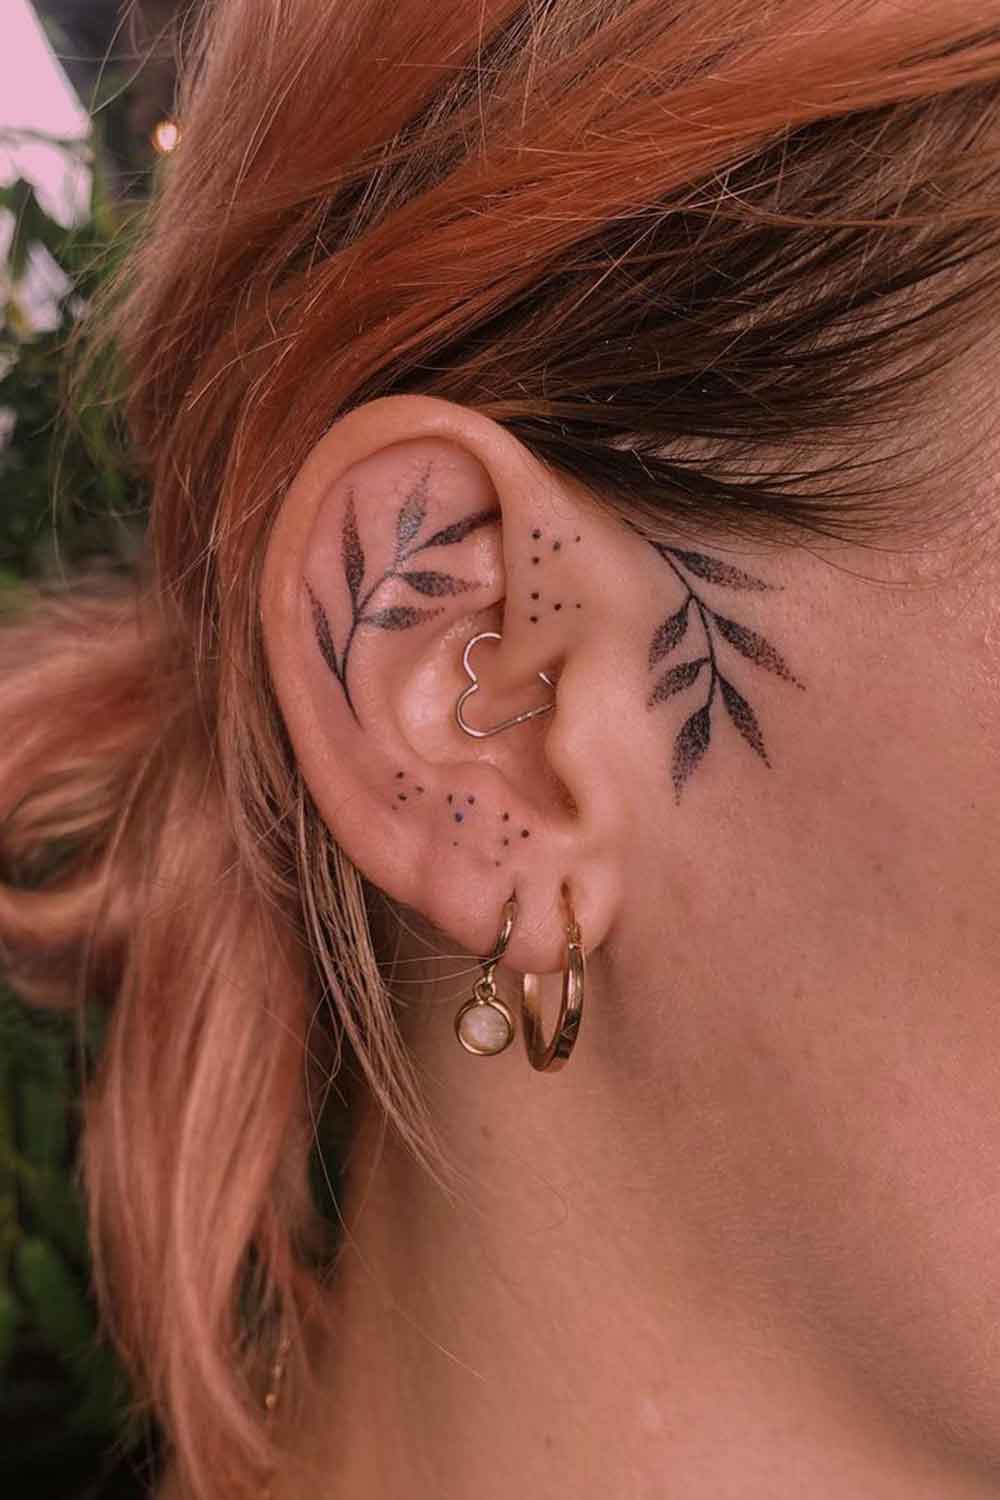 fotos-de-tatuagens-na-orelha-12-1 